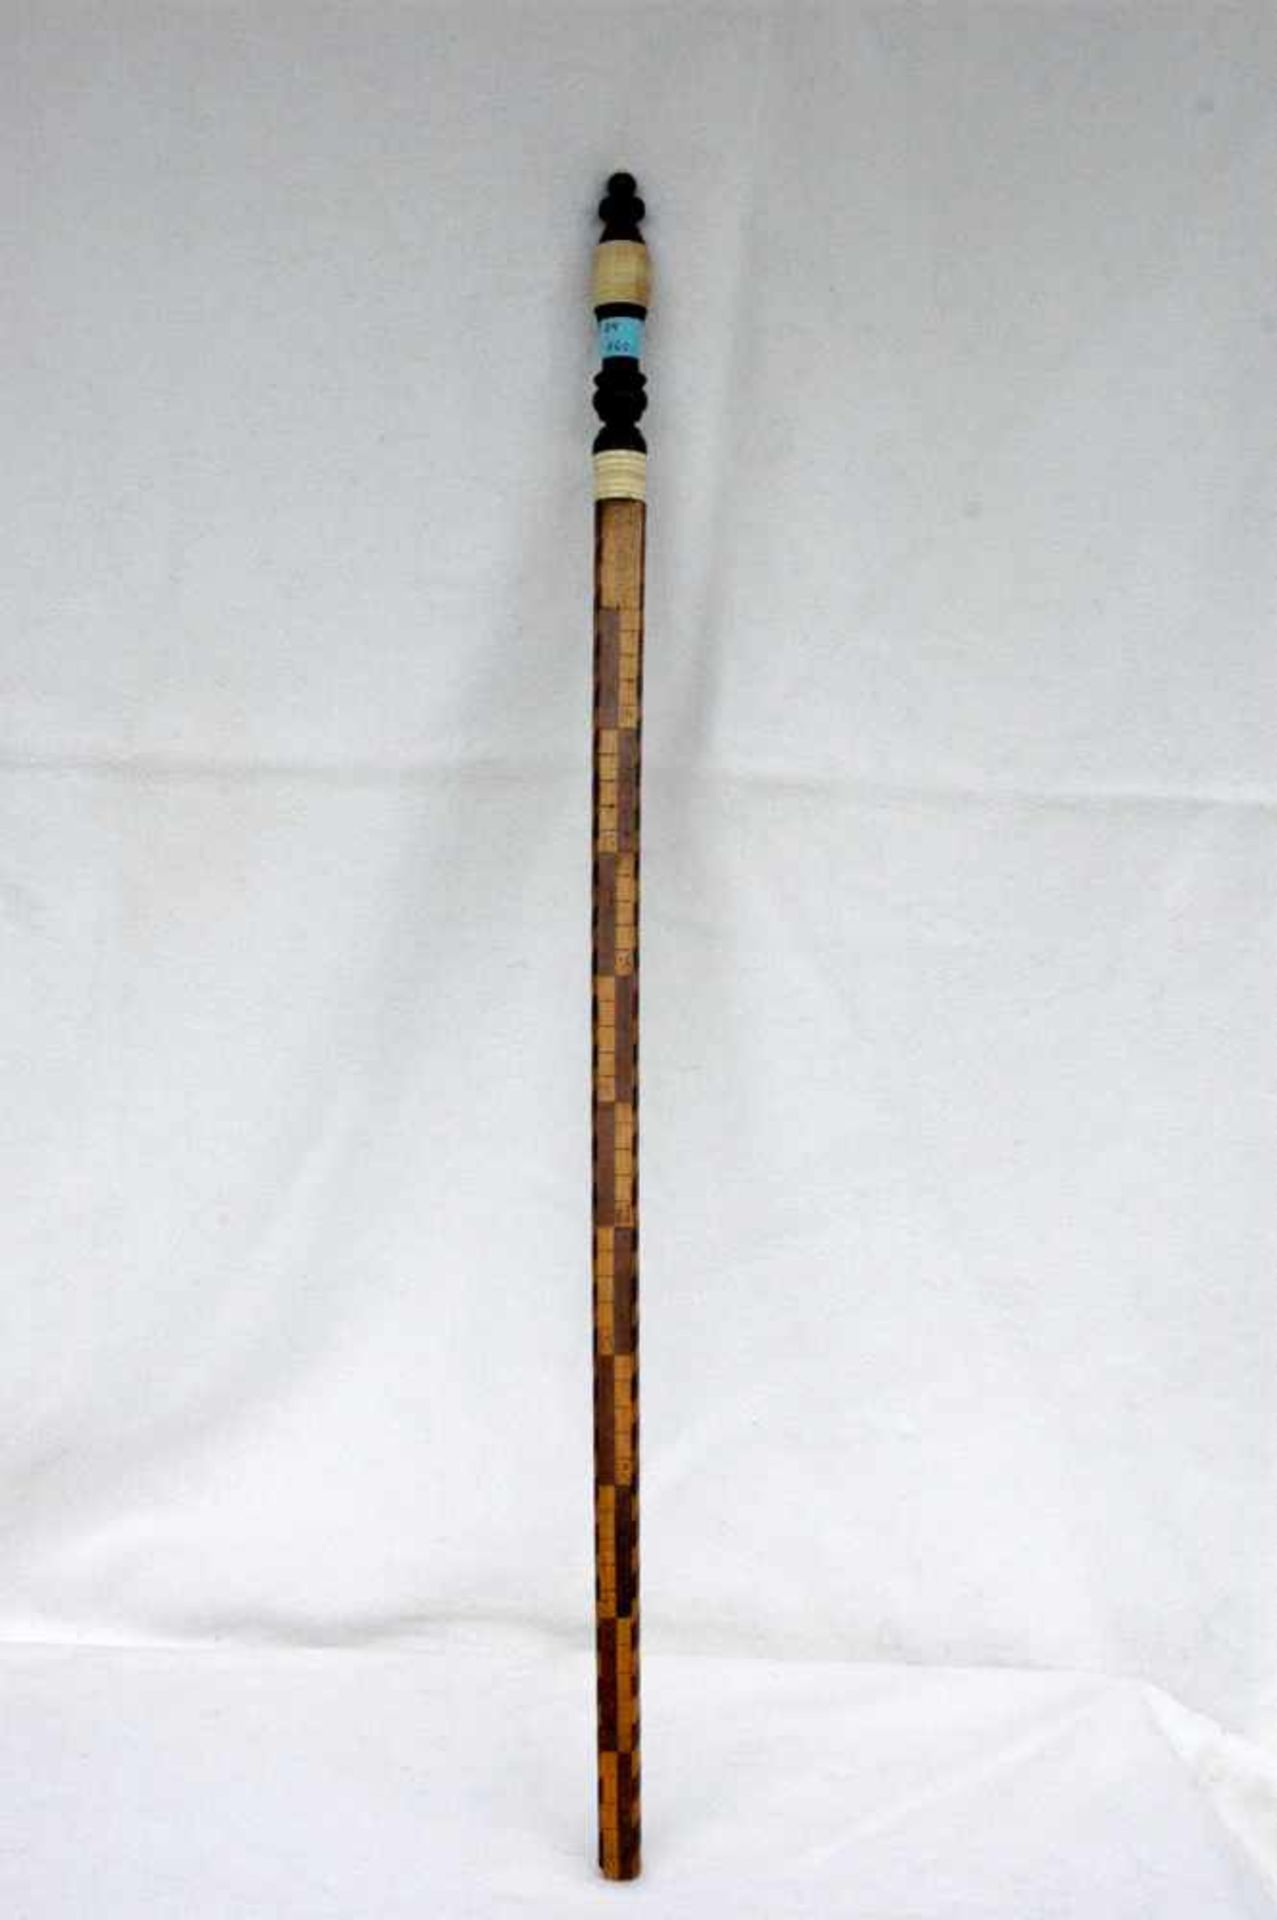 Elle, Intarsienarbeiten, Griff schwarz und Bein, ½ Meter 1872, 69 cm, 2 Holzelementchen fehlen